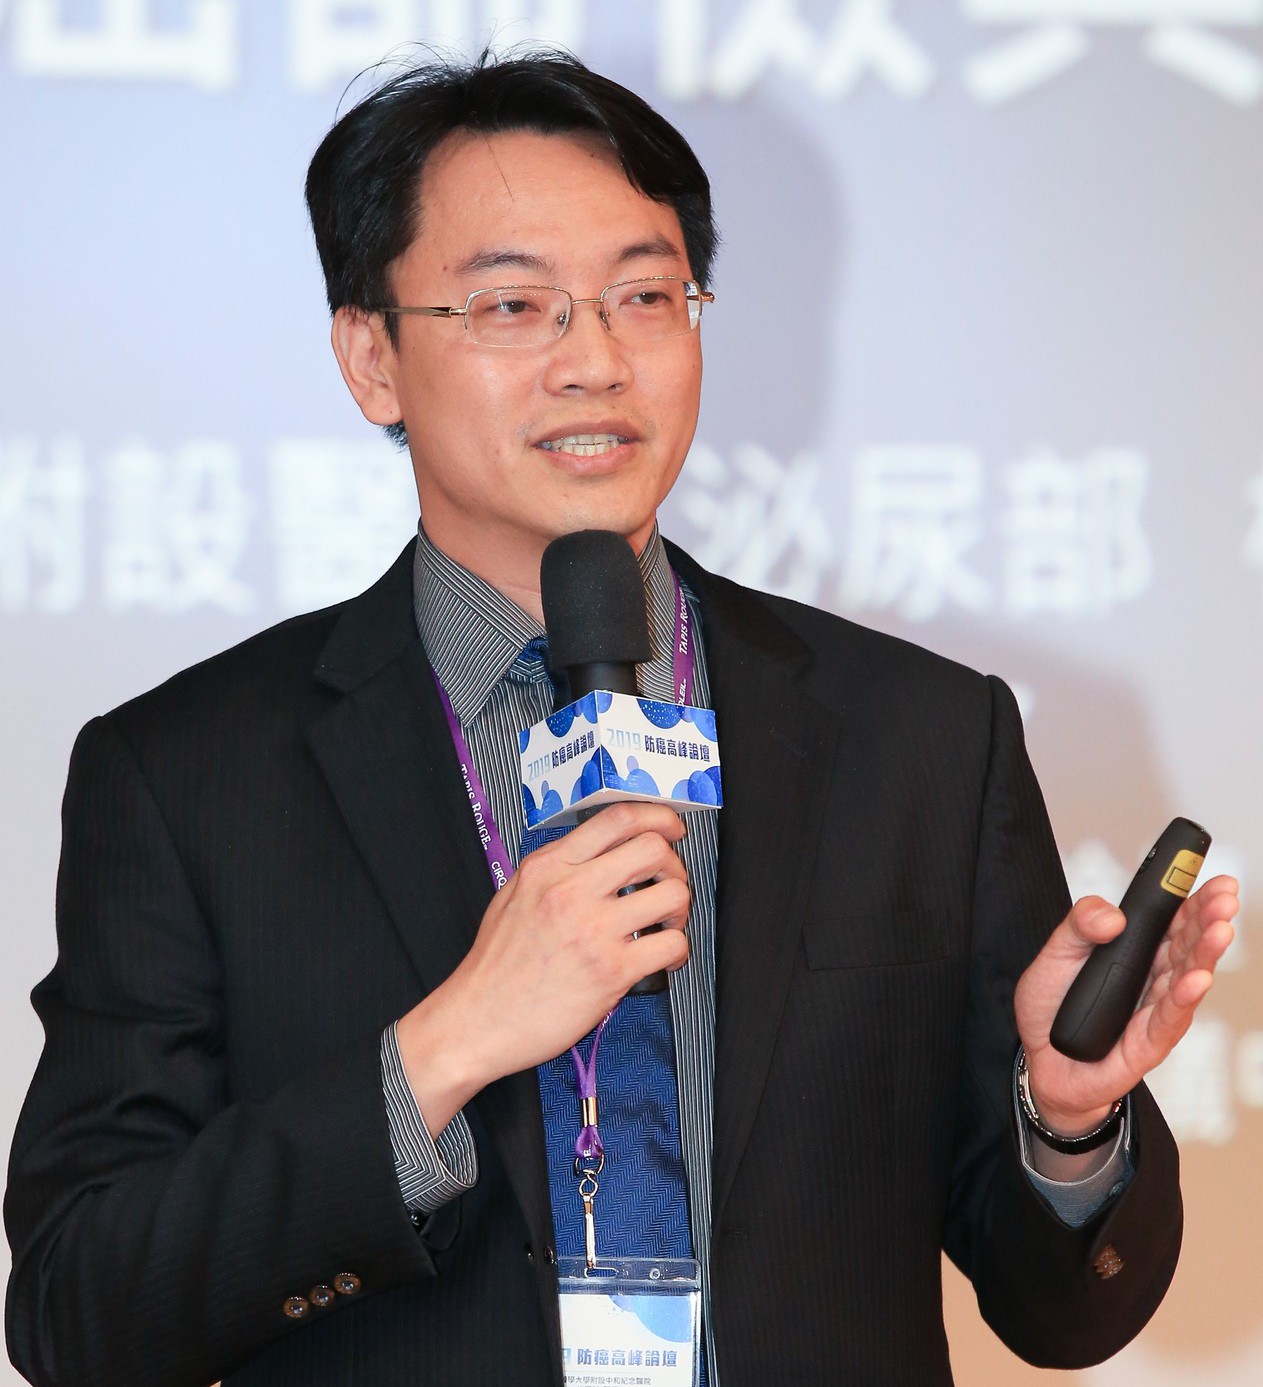 高醫附醫院泌尿科主治醫師柯宏龍，在「2019防癌高峰論壇」上發表專題演講。